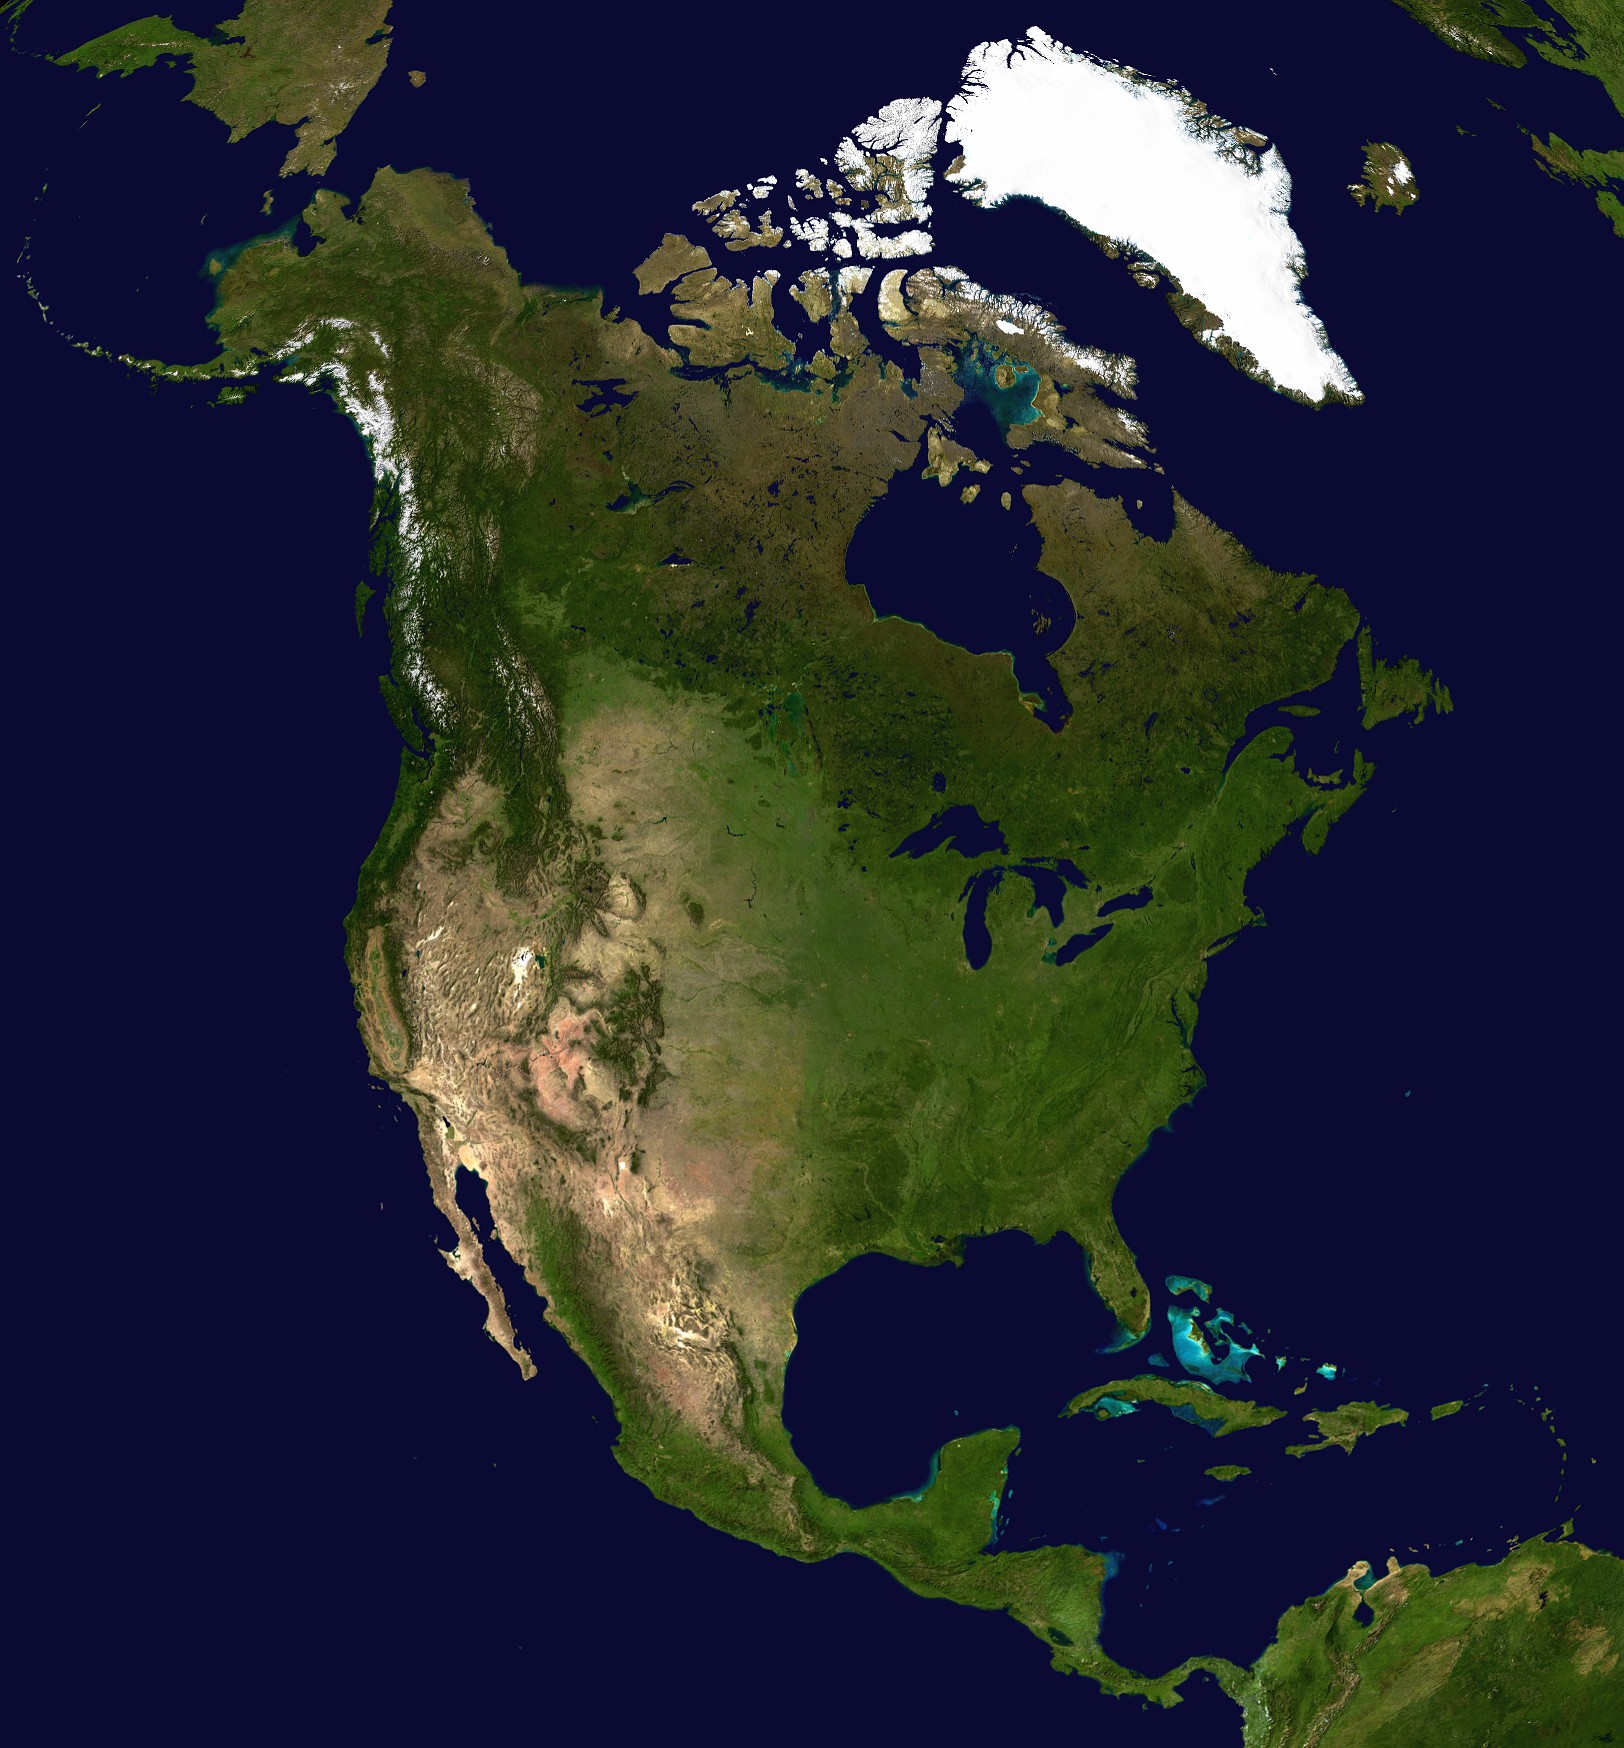 kuzey amerika uydu imaj